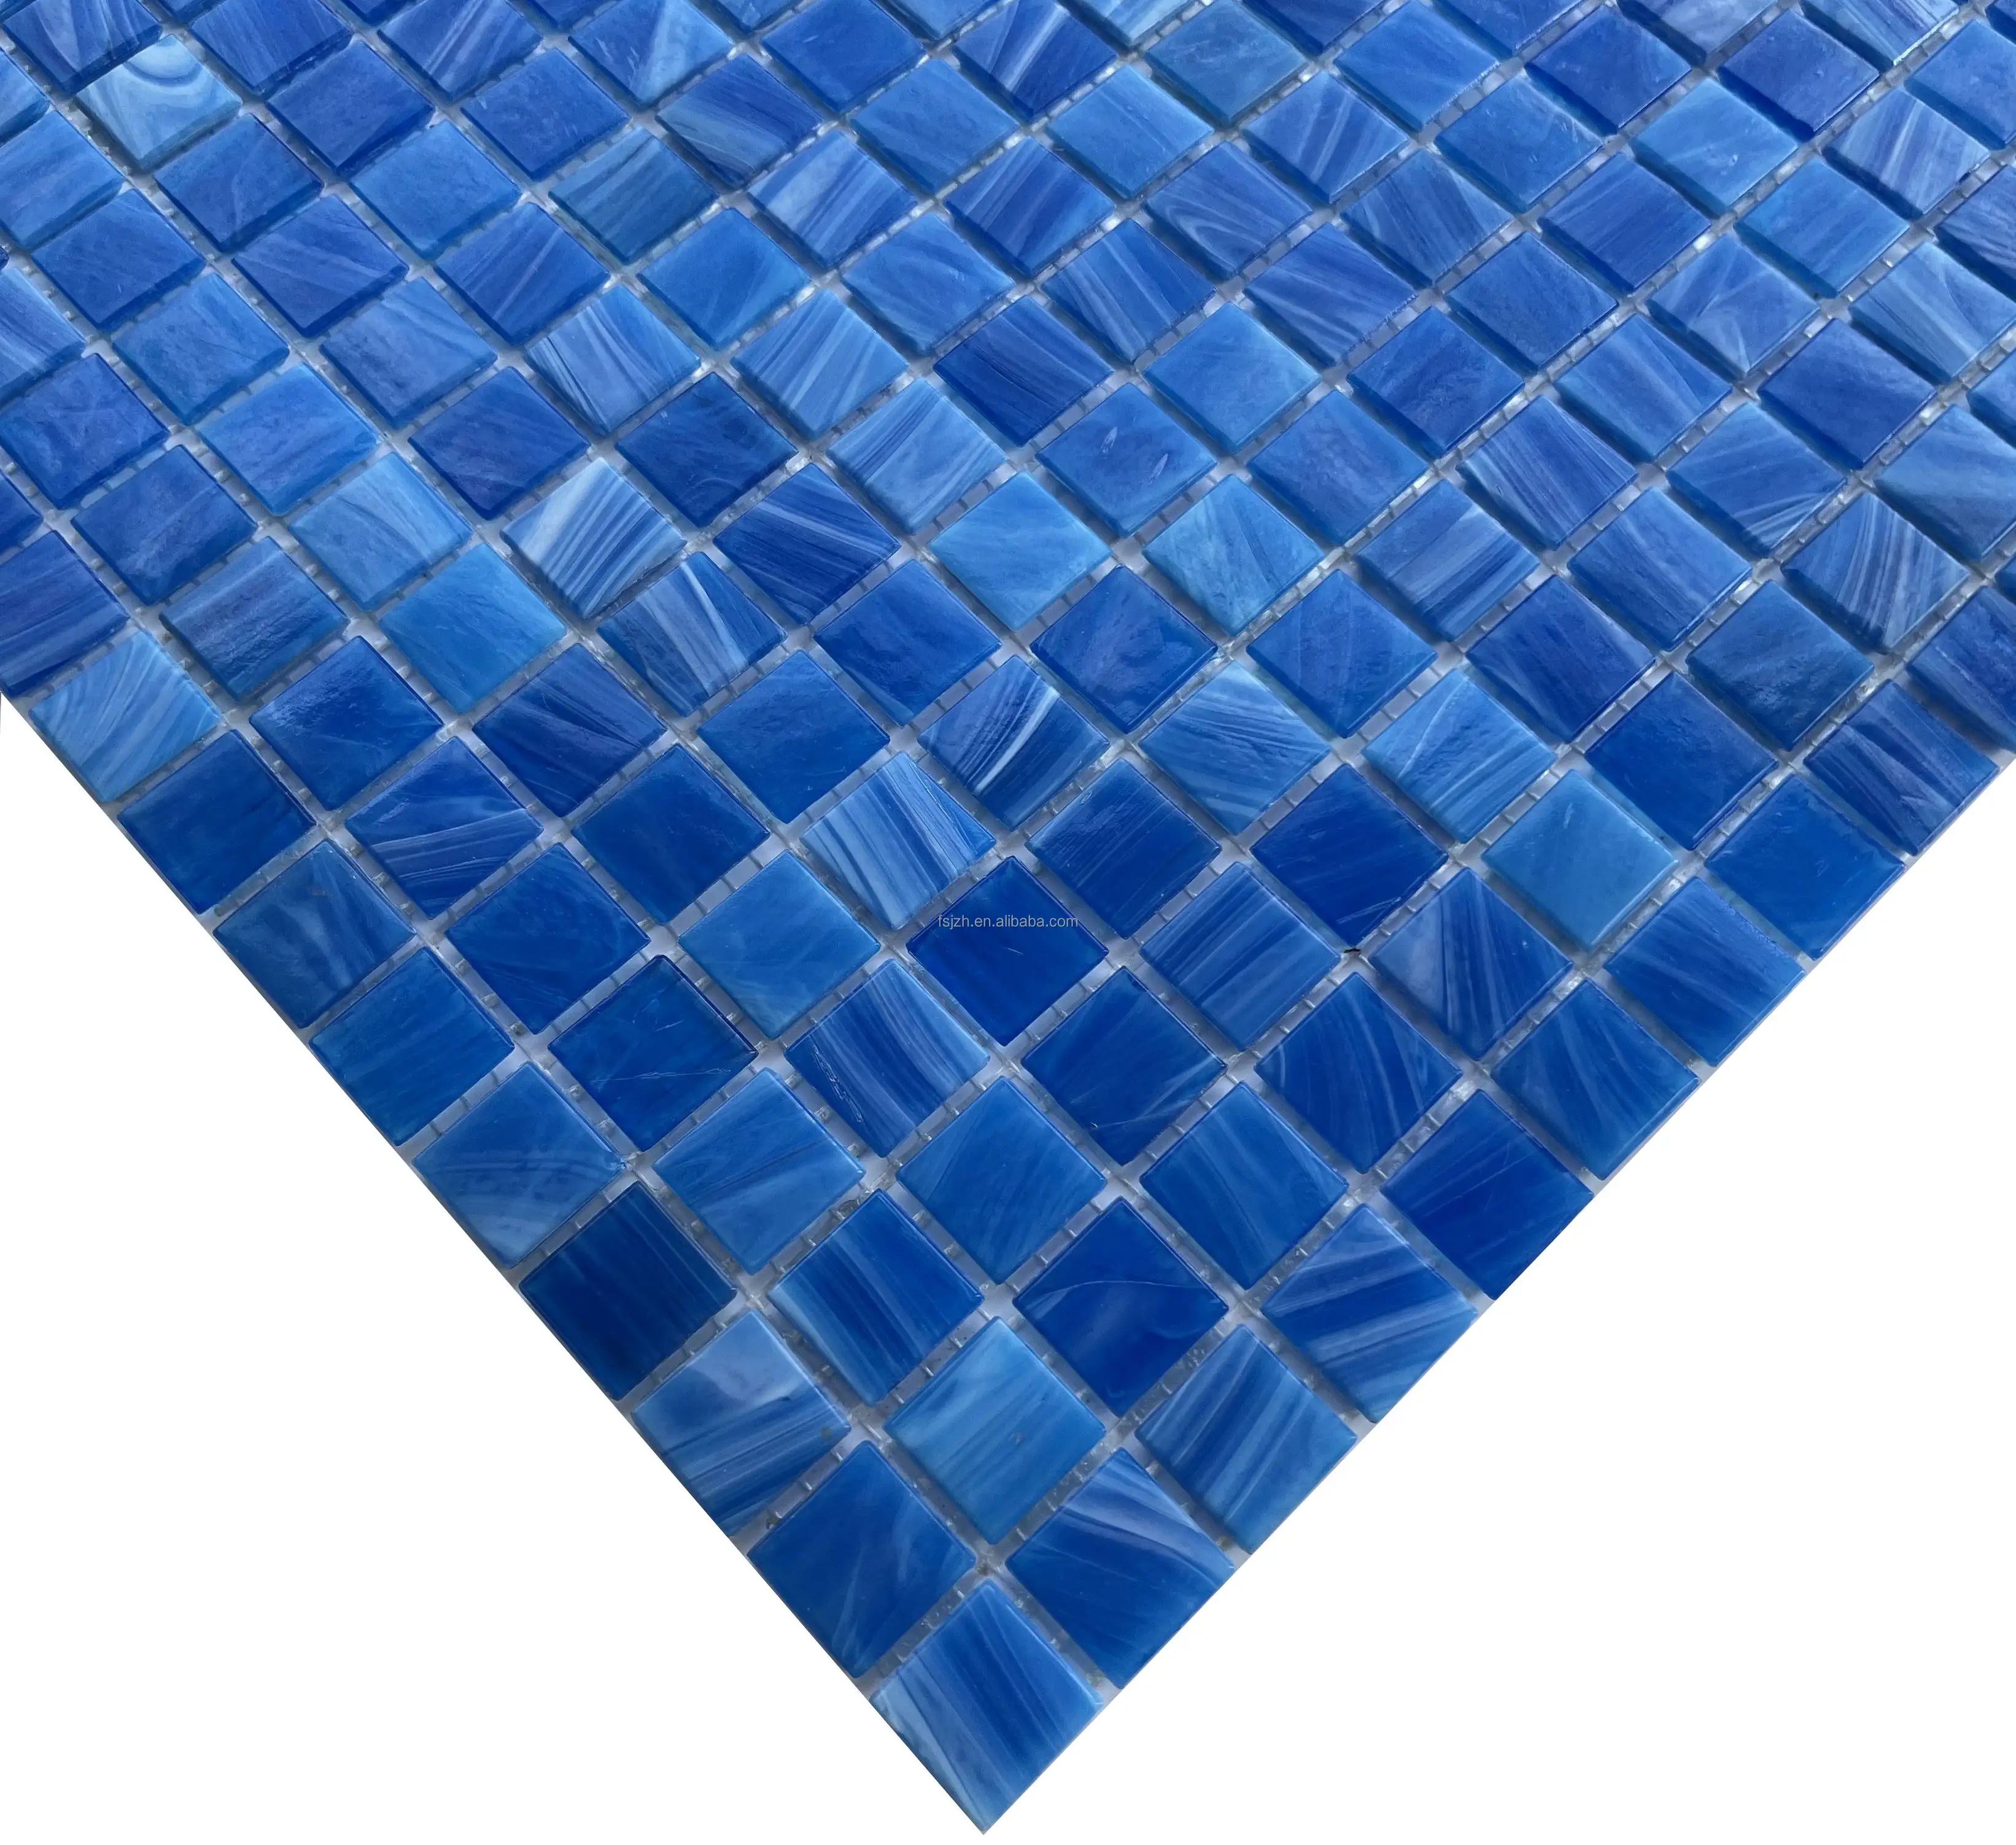 Ake Blue-Juego de azulejos de mosaico para sala de atletismo, azulejo antiguo